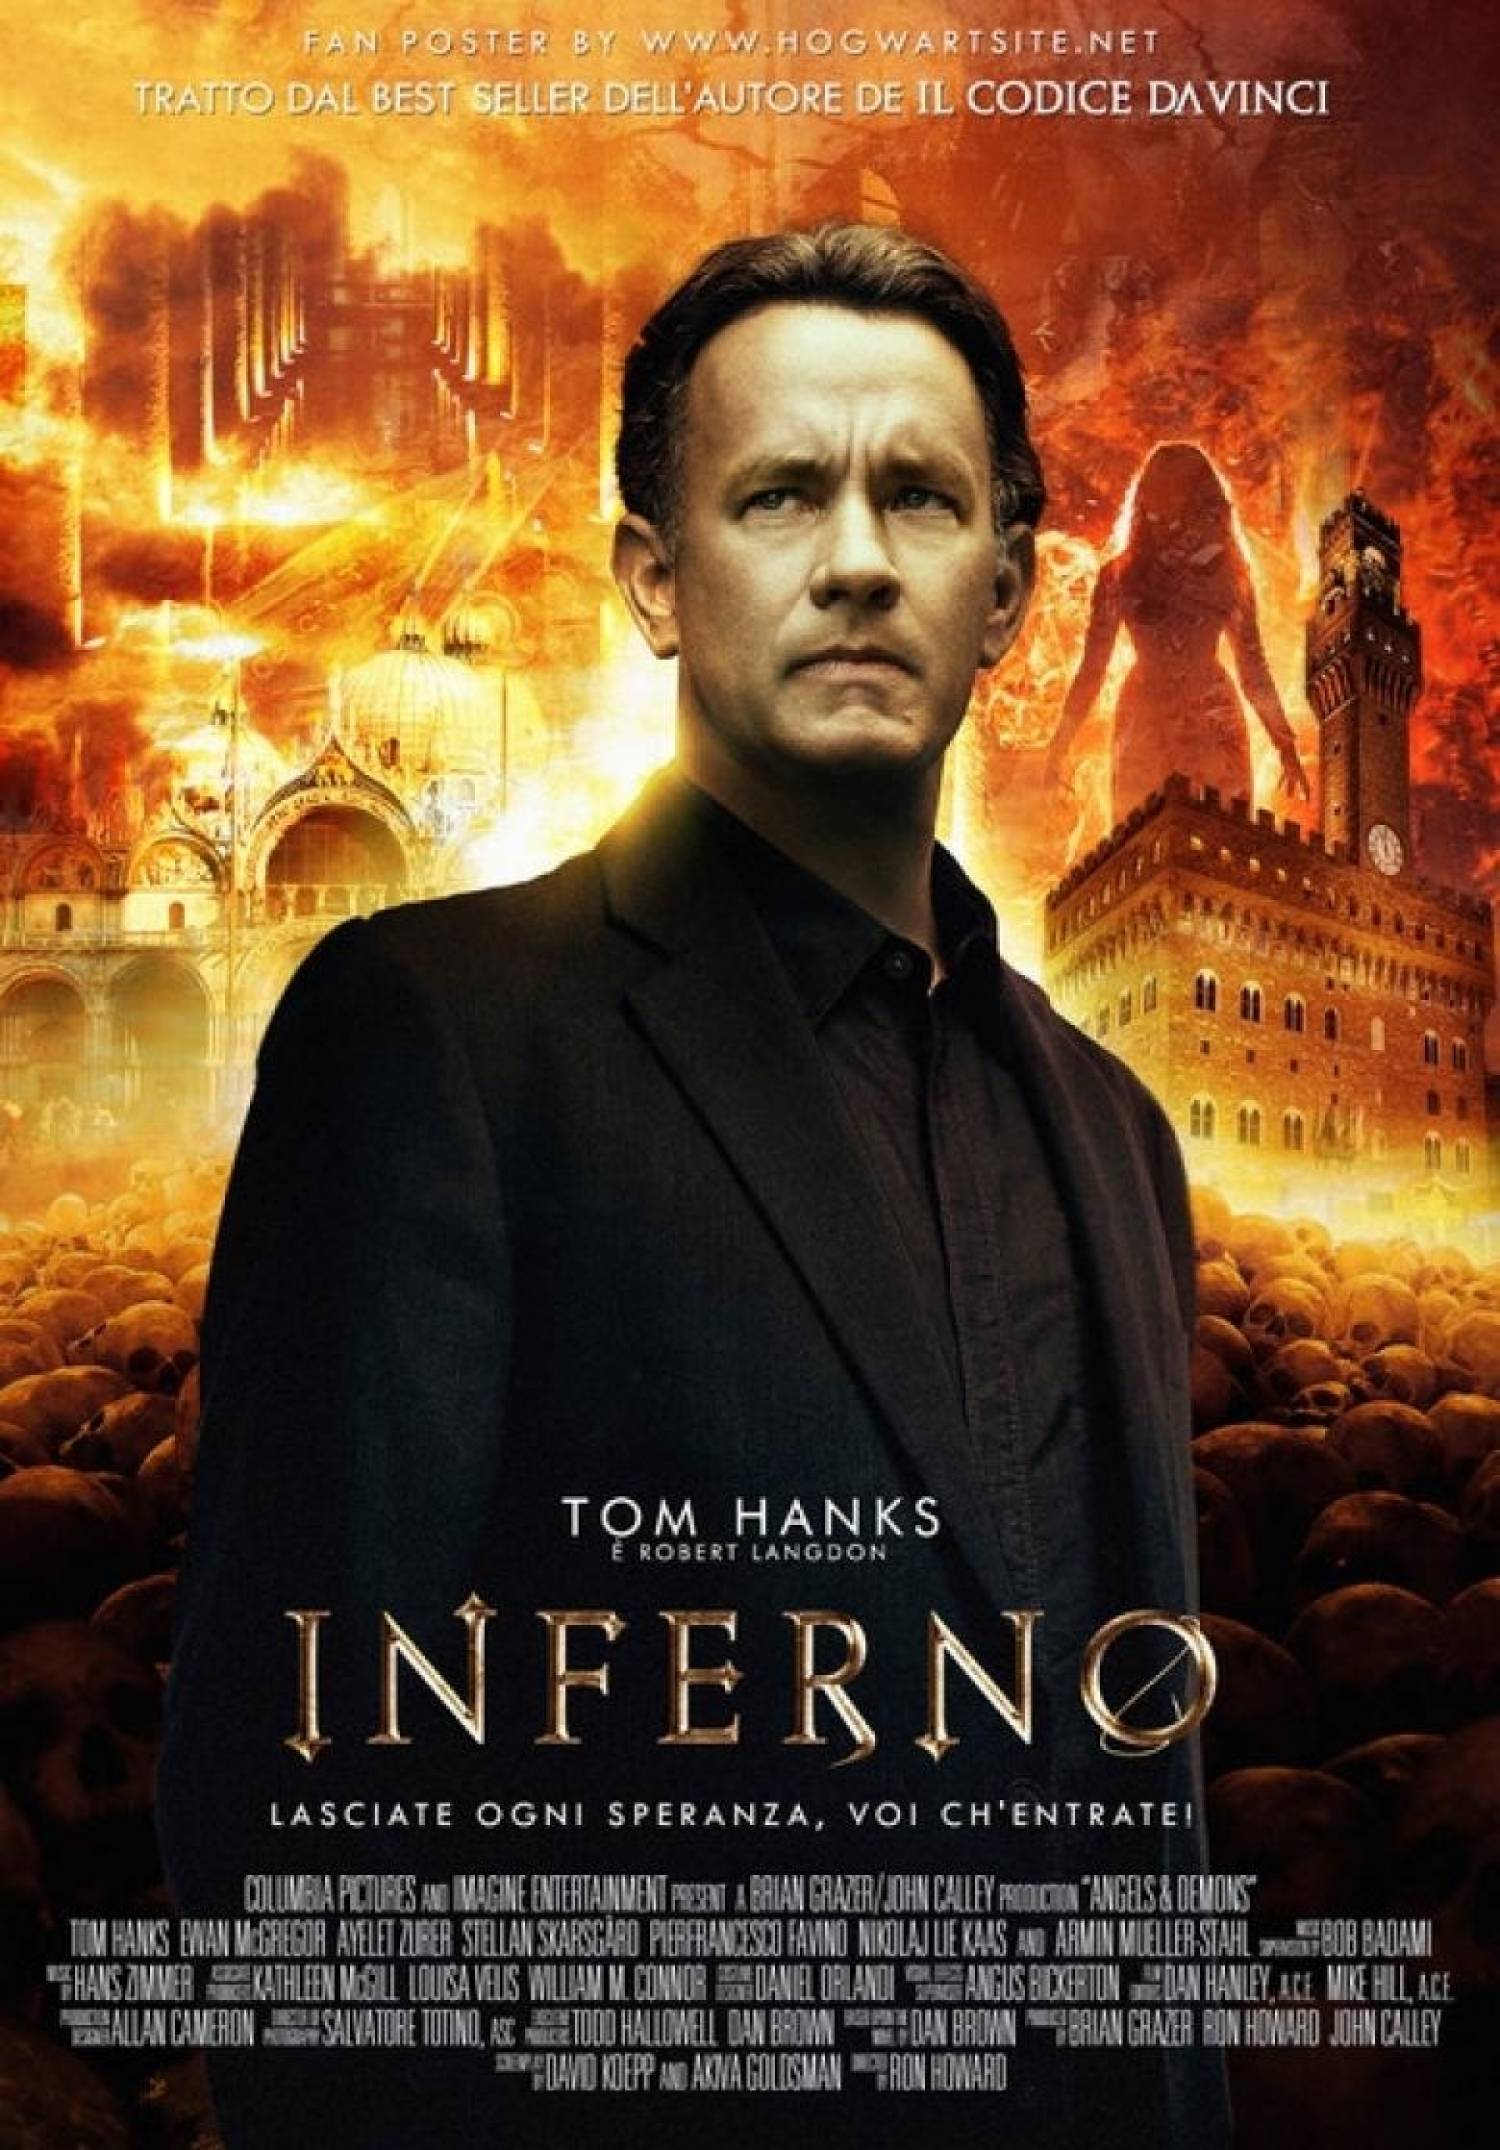 Inferno | Novo trailer legendado e sinopse - Café com Filme